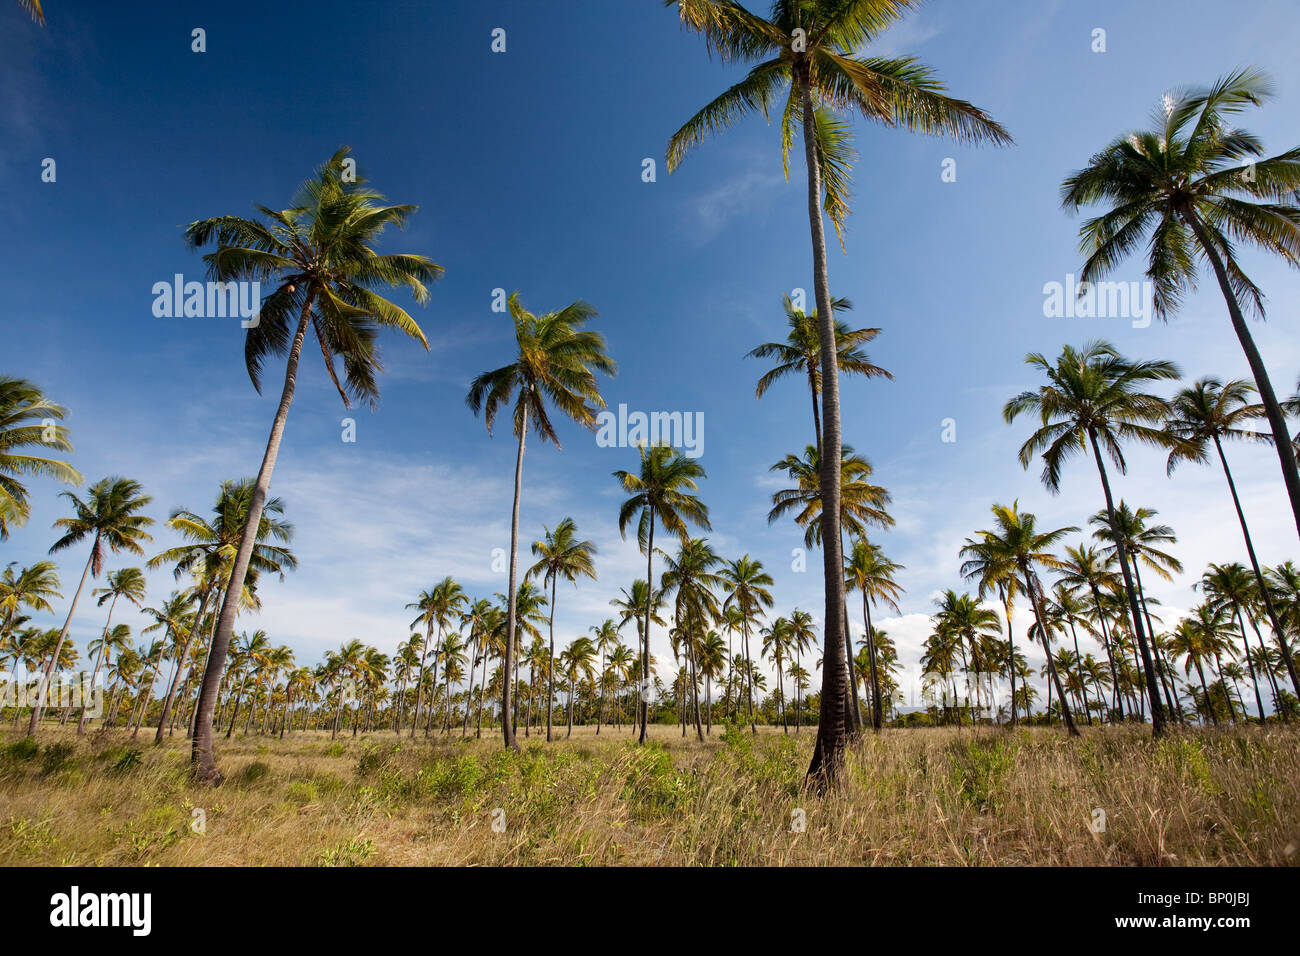 Le Mozambique, Tofo. Les plantations de cocotiers autour de tofo. Banque D'Images